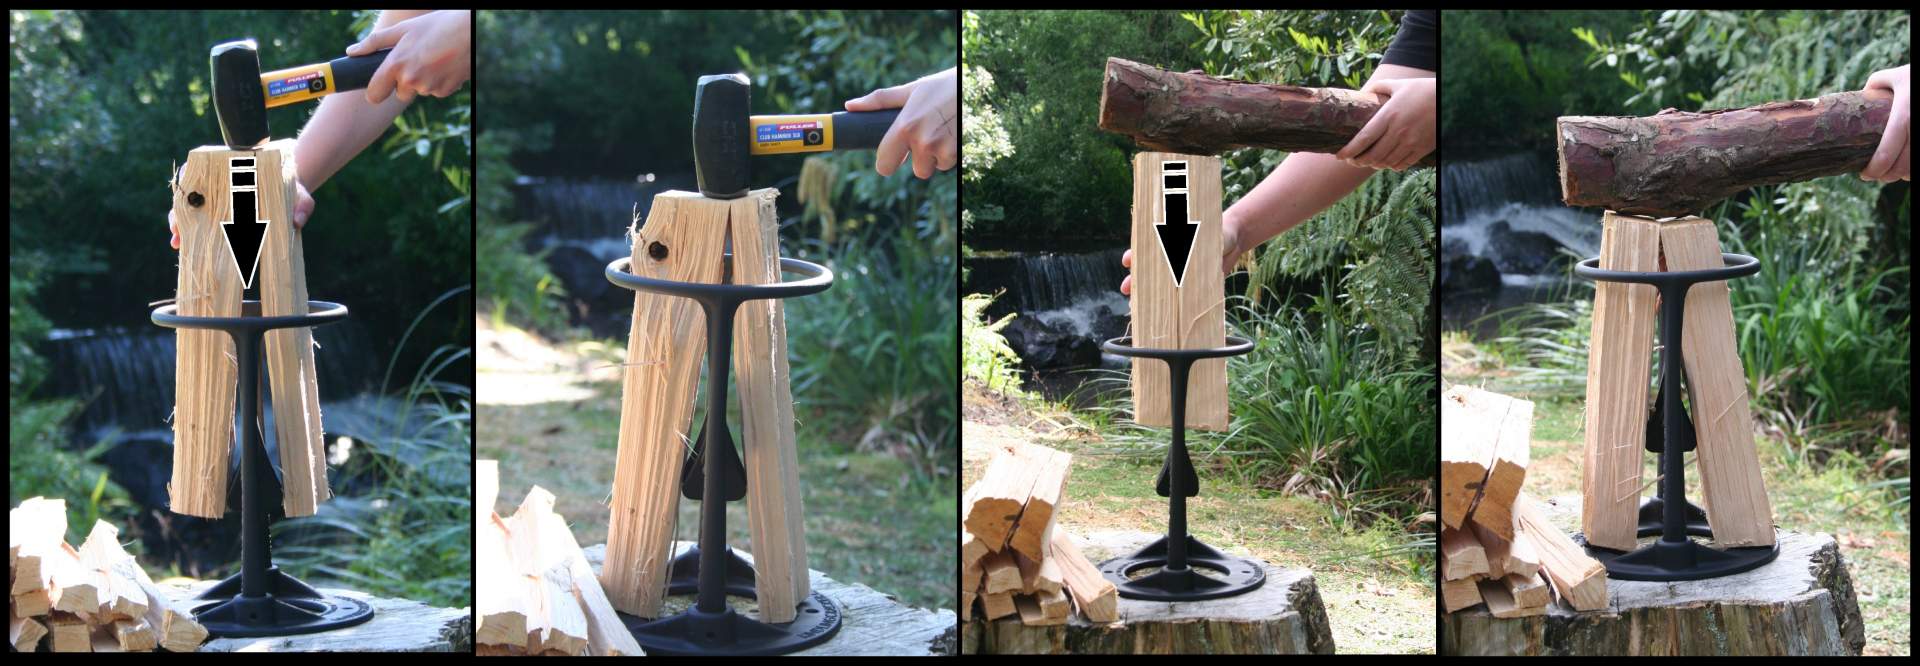 Как правильно колоть дрова: инструмент и устройство